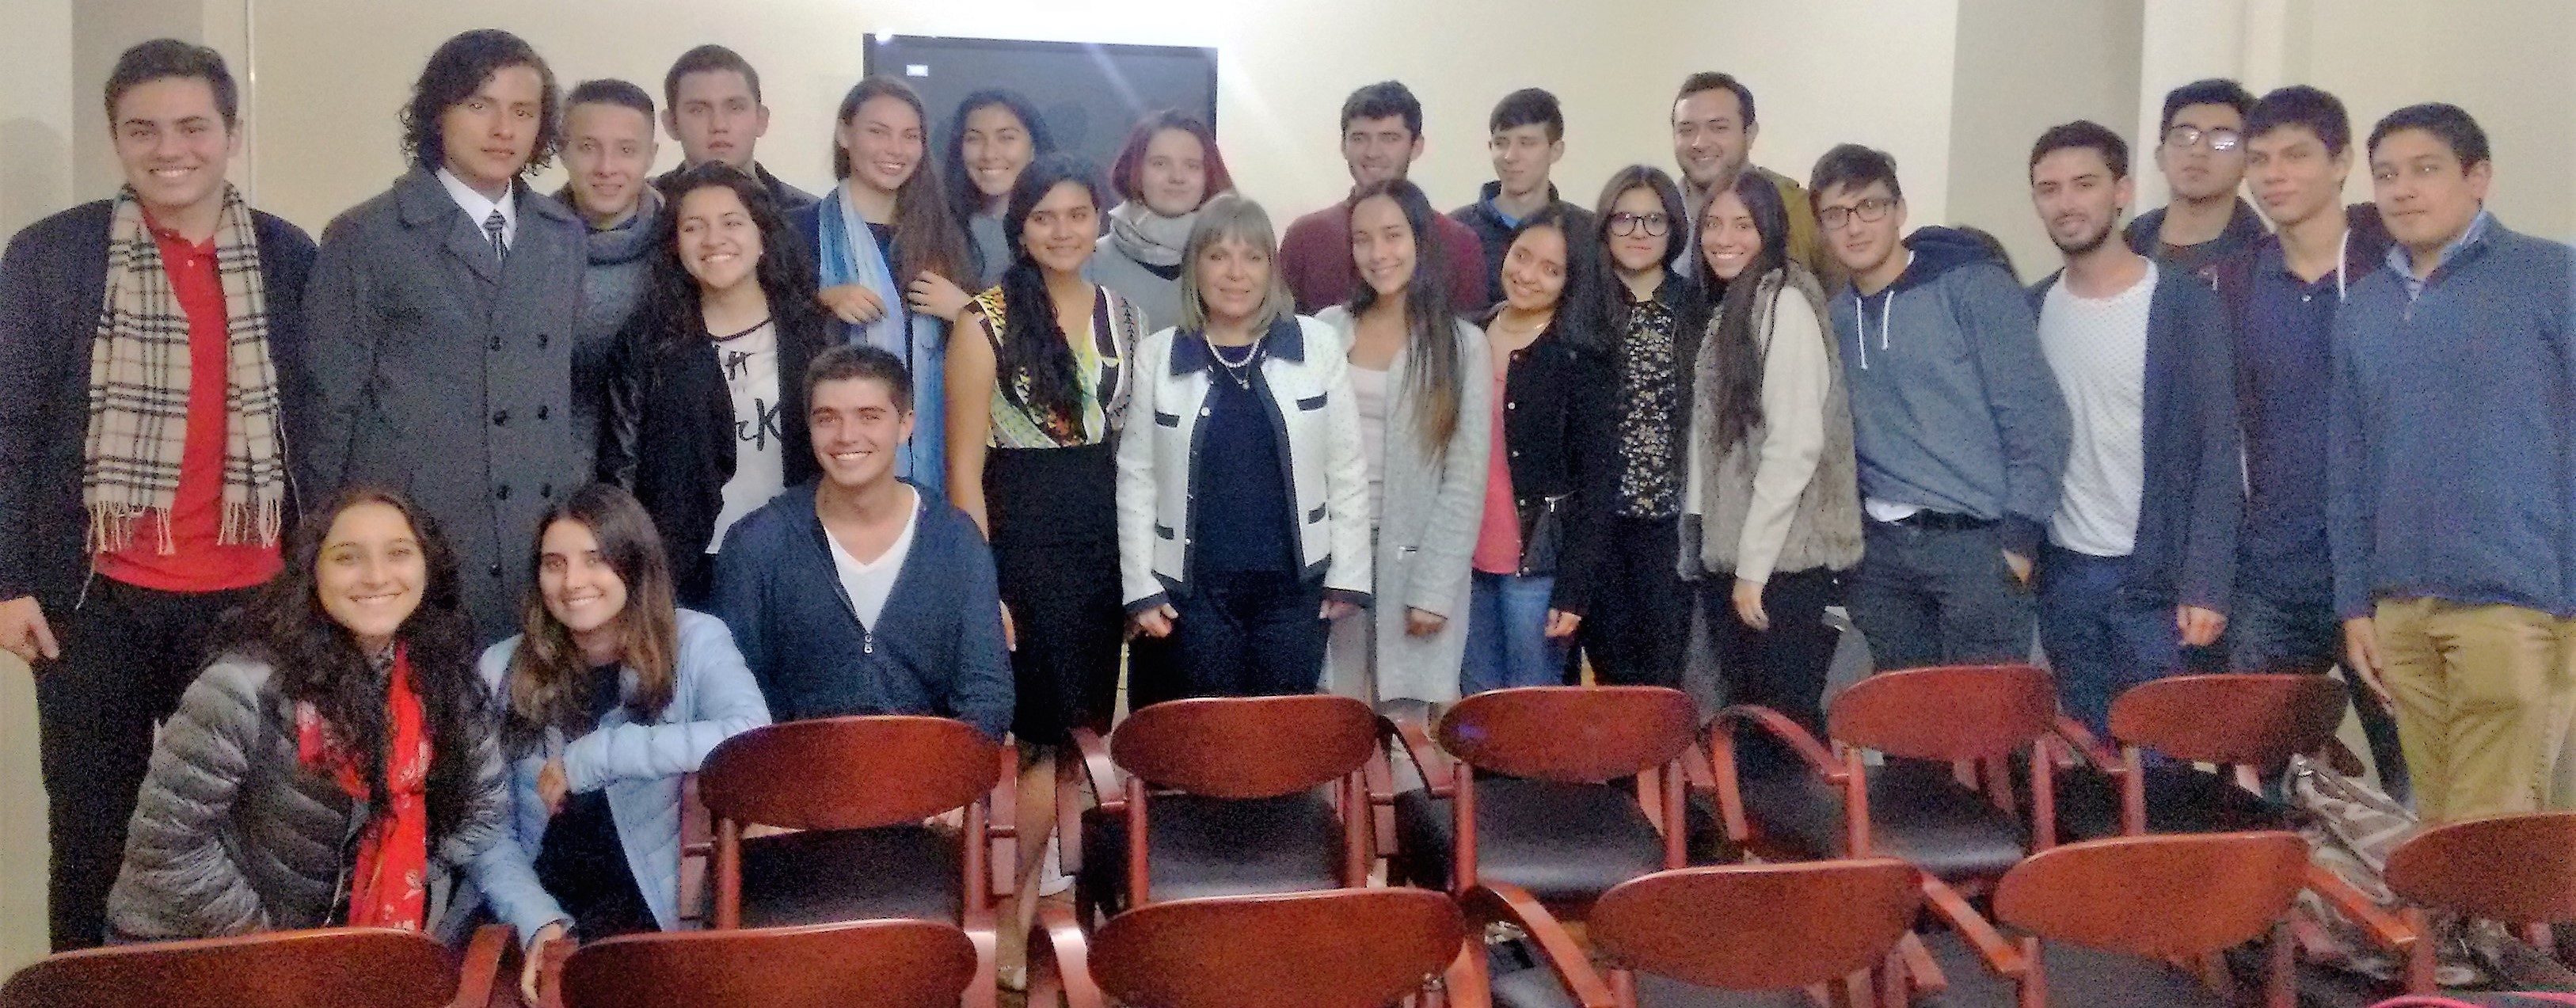 Estudiantes de la Universidad Los Andes visitan la Academia Diplomática 